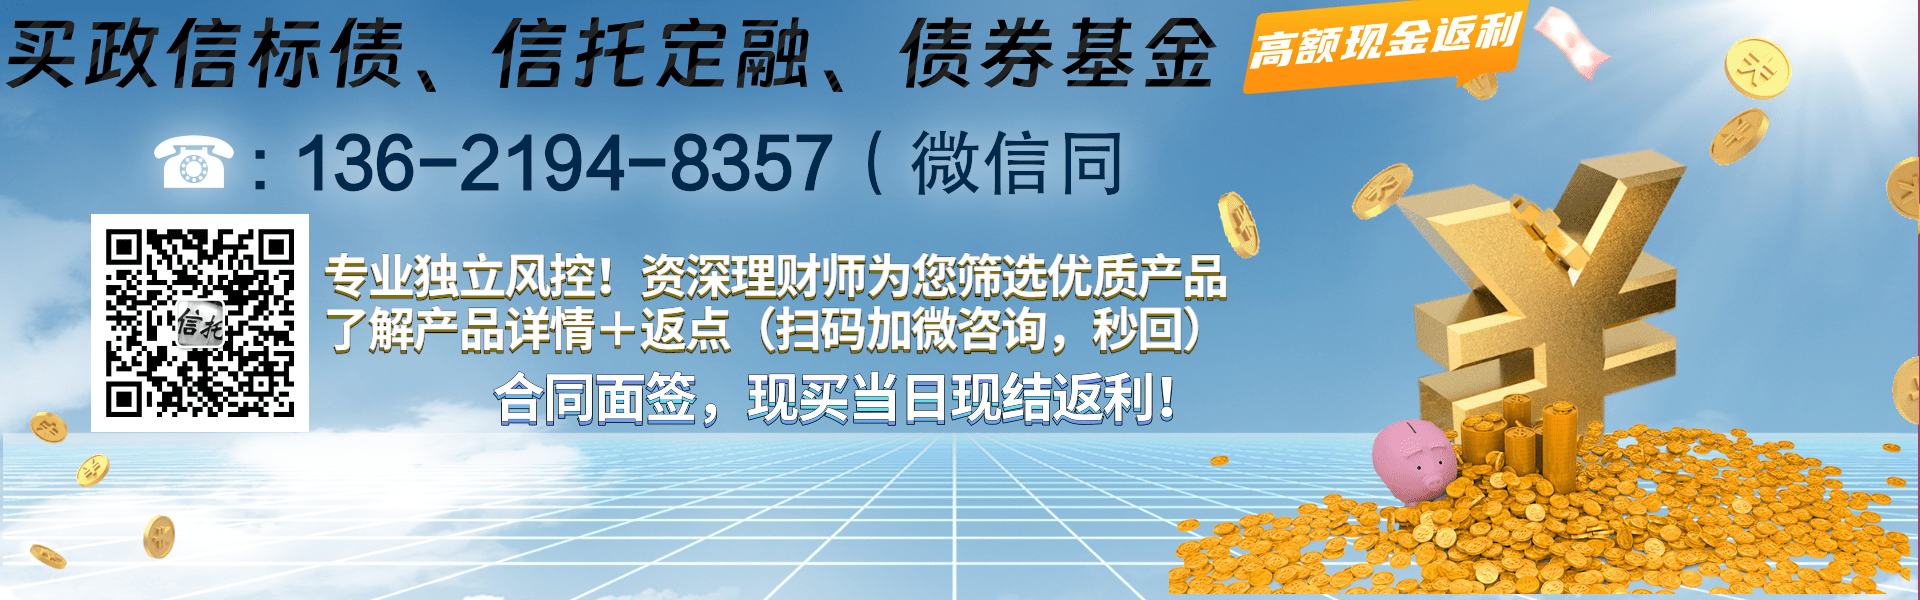 山西信托-信和6号重庆大足中期票据投资集合资金信托计划